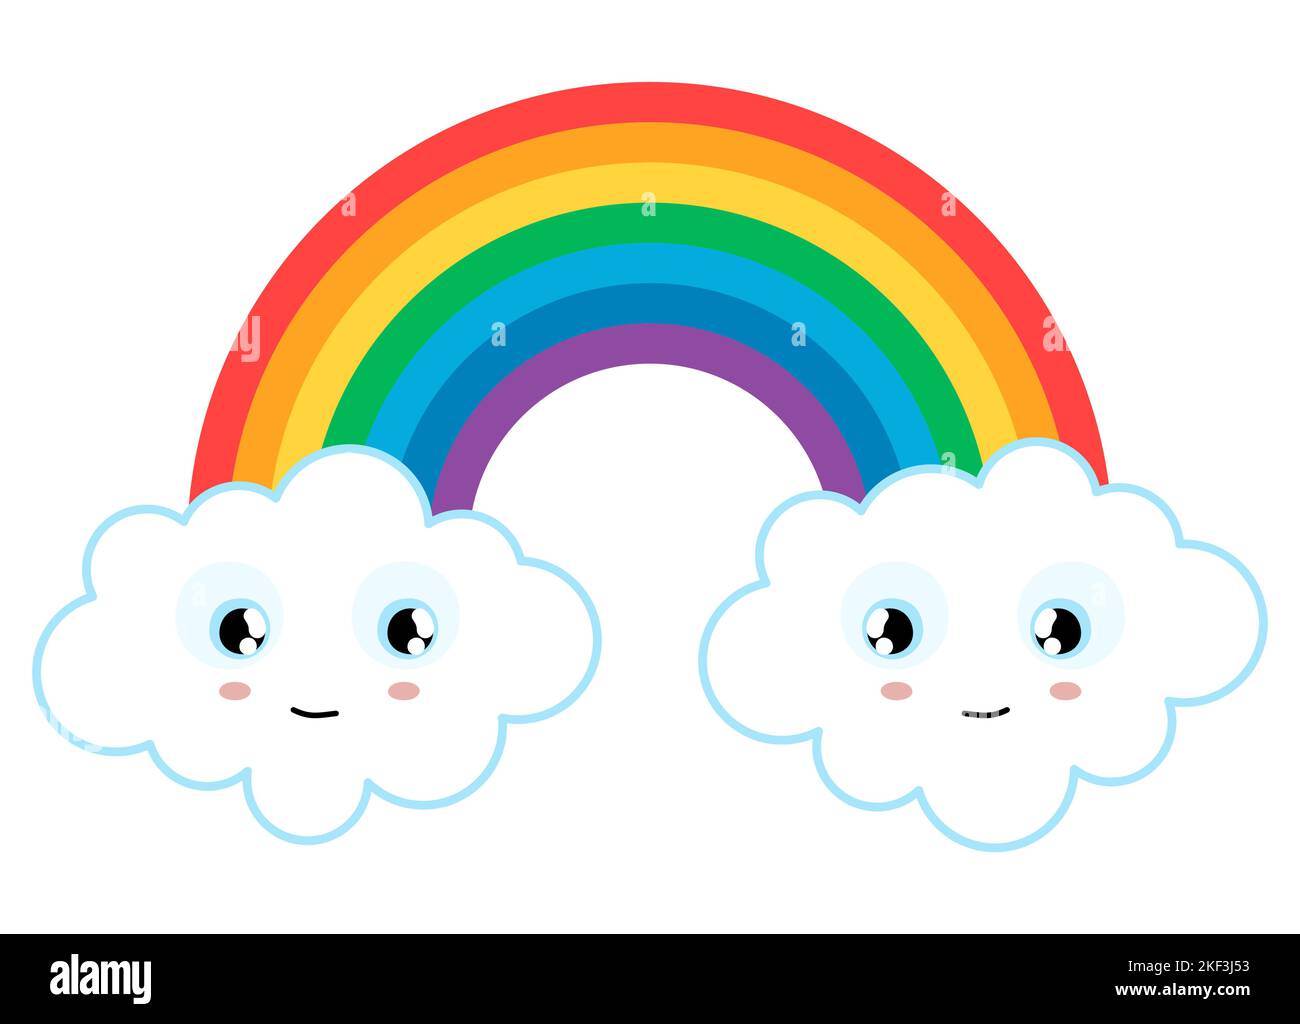 illustrazione vettoriale eps con meraviglioso arcobaleno colorato con nubi bianche con belle facce sorridenti alle estremità Illustrazione Vettoriale